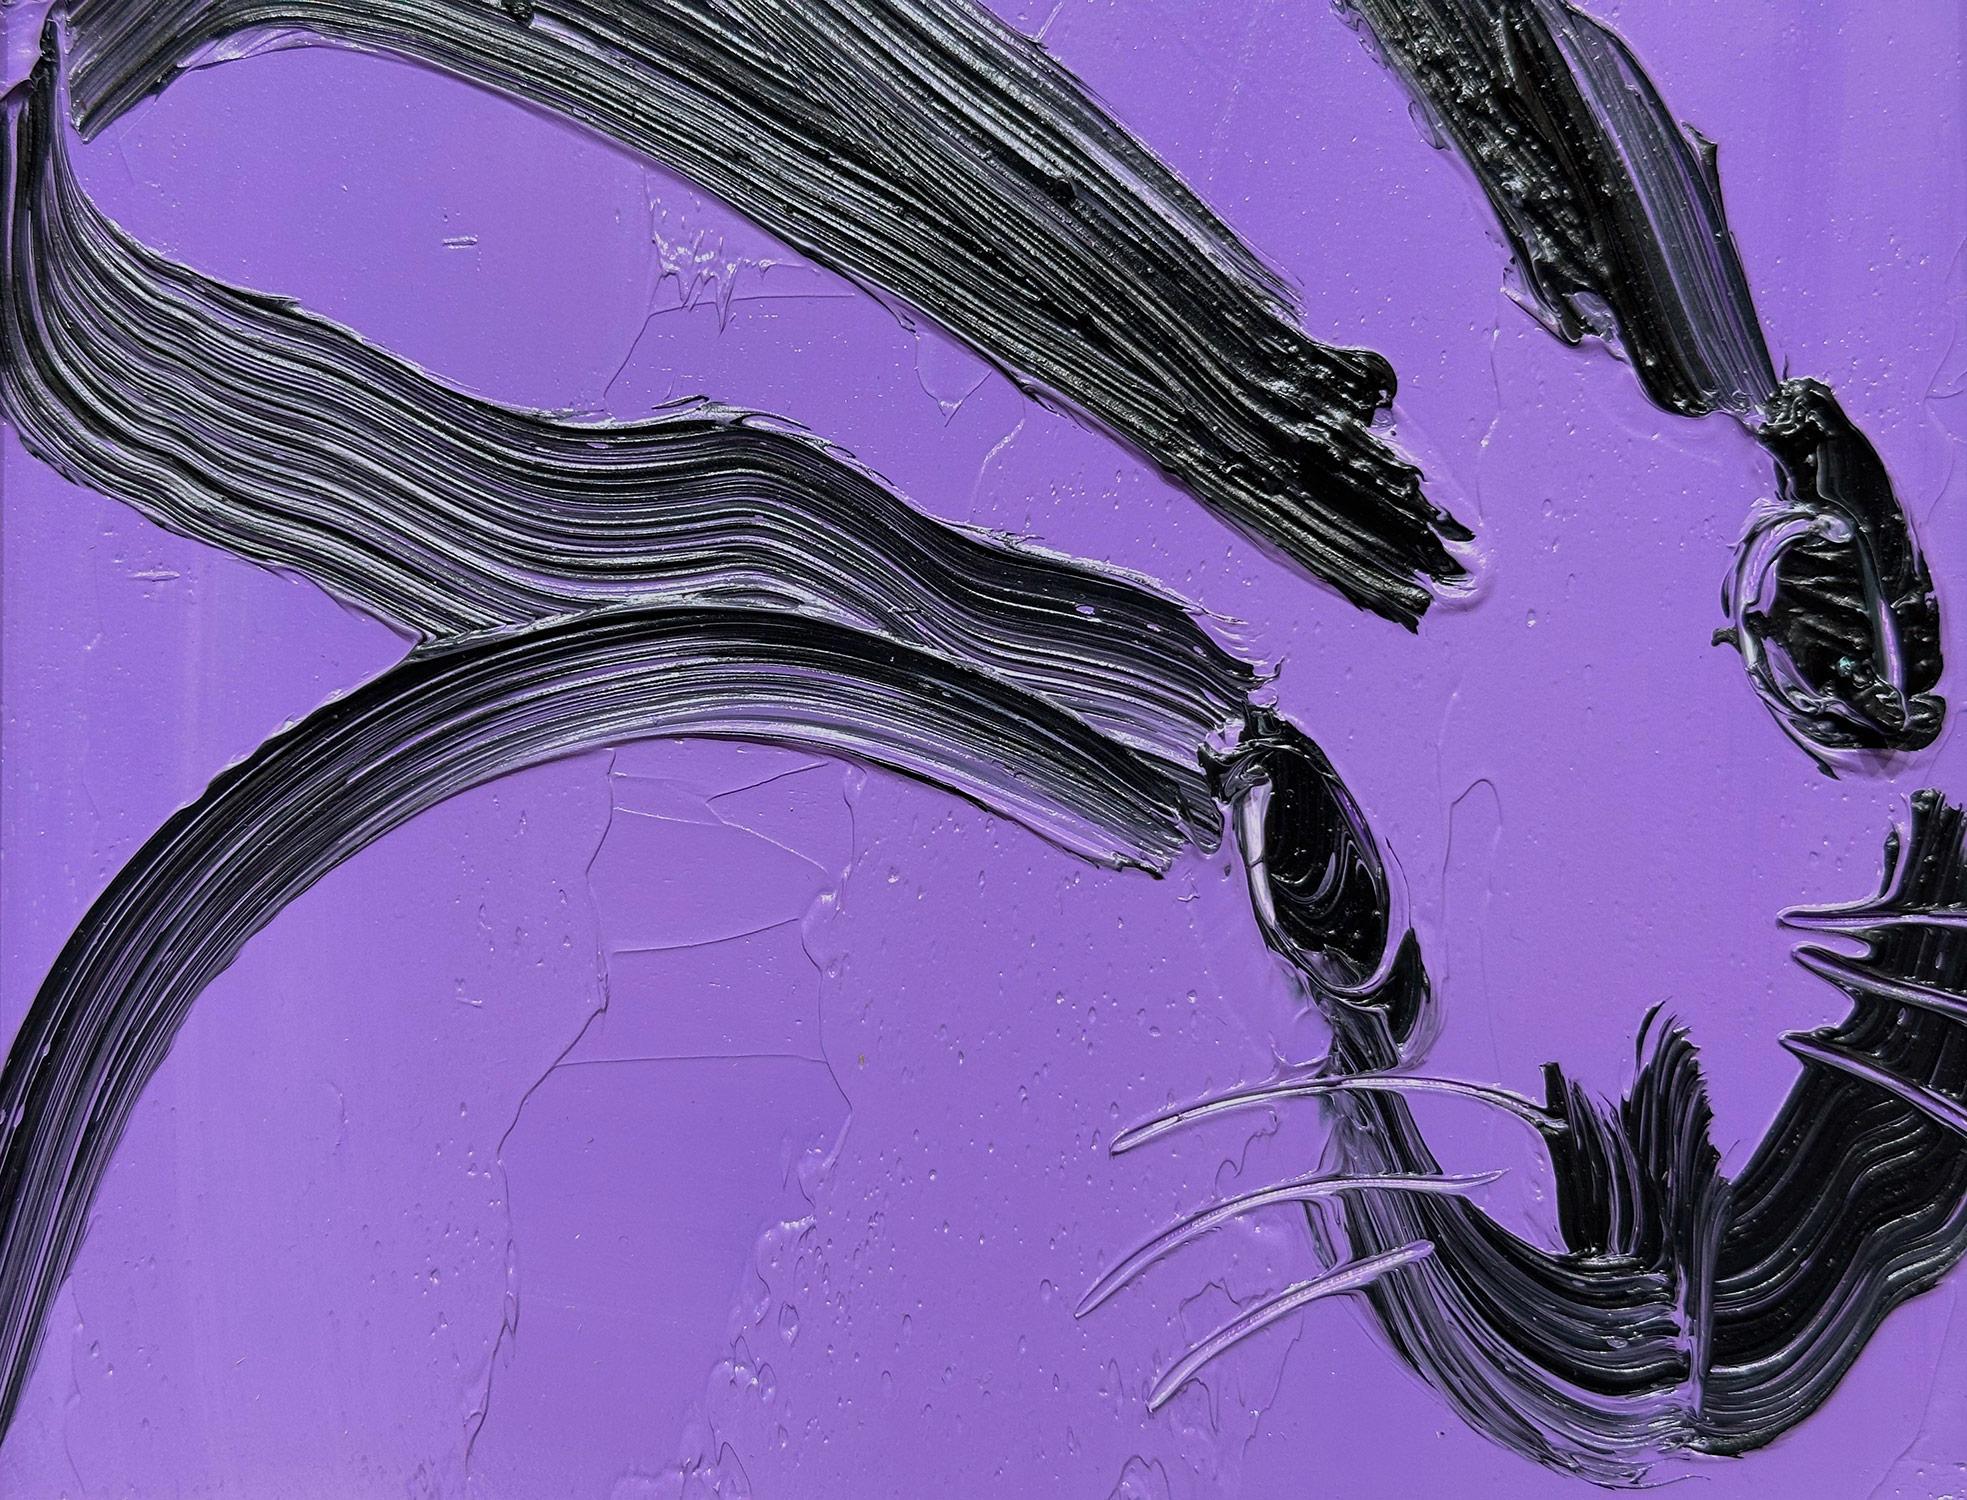 Eine wunderbare Komposition eines der ikonischsten Themen von Slonem, nämlich Hasen. Dieses Werk stellt eine gestische Figur eines schwarzen Hasen auf einem lila-lavendelfarbenen Hintergrund dar, wobei die Farbe dick aufgetragen wurde. Es ist in